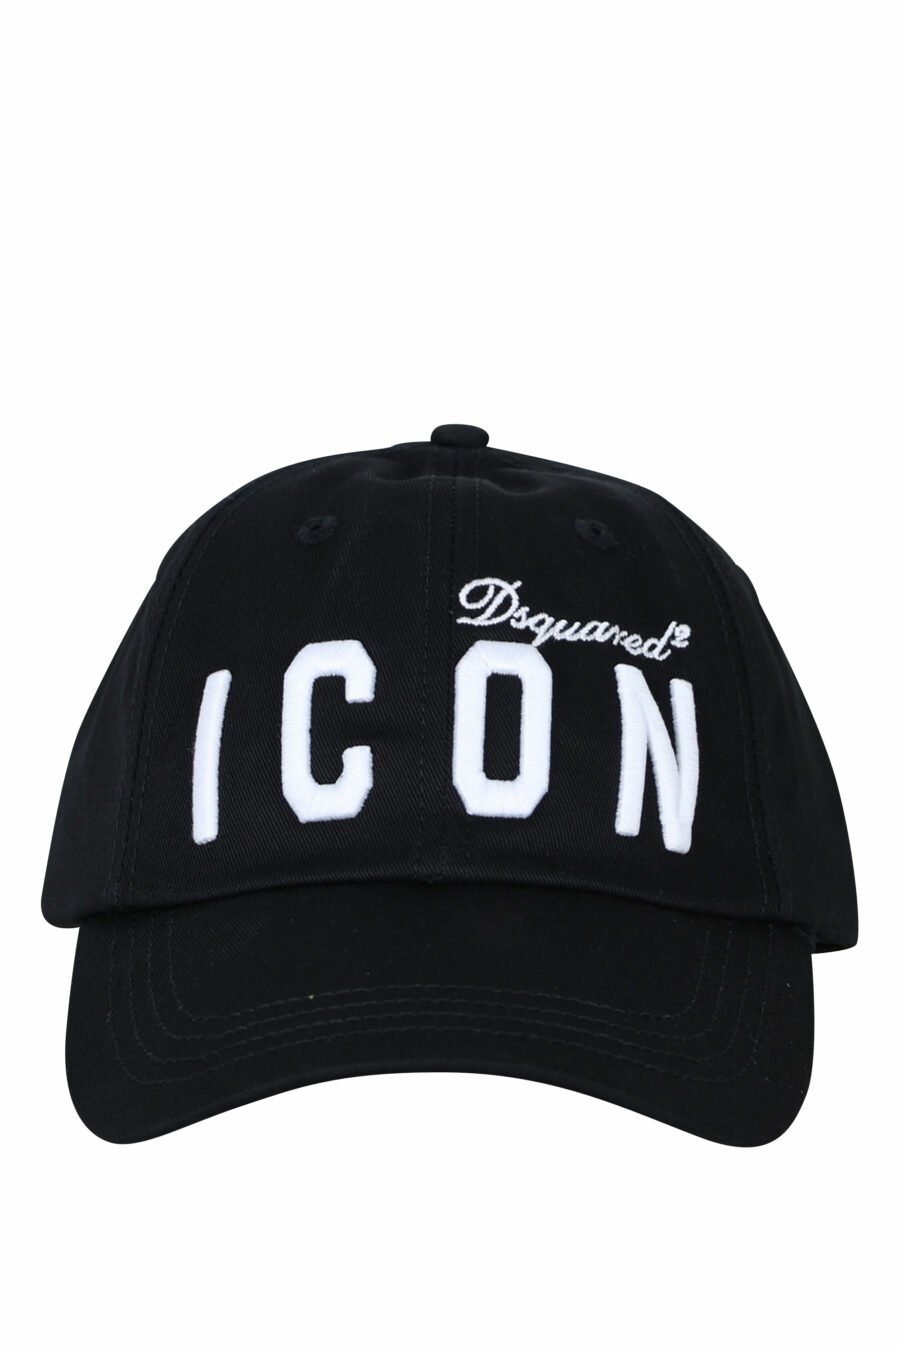 Black cap with double logo "icon" maxilogue - 8055777217672